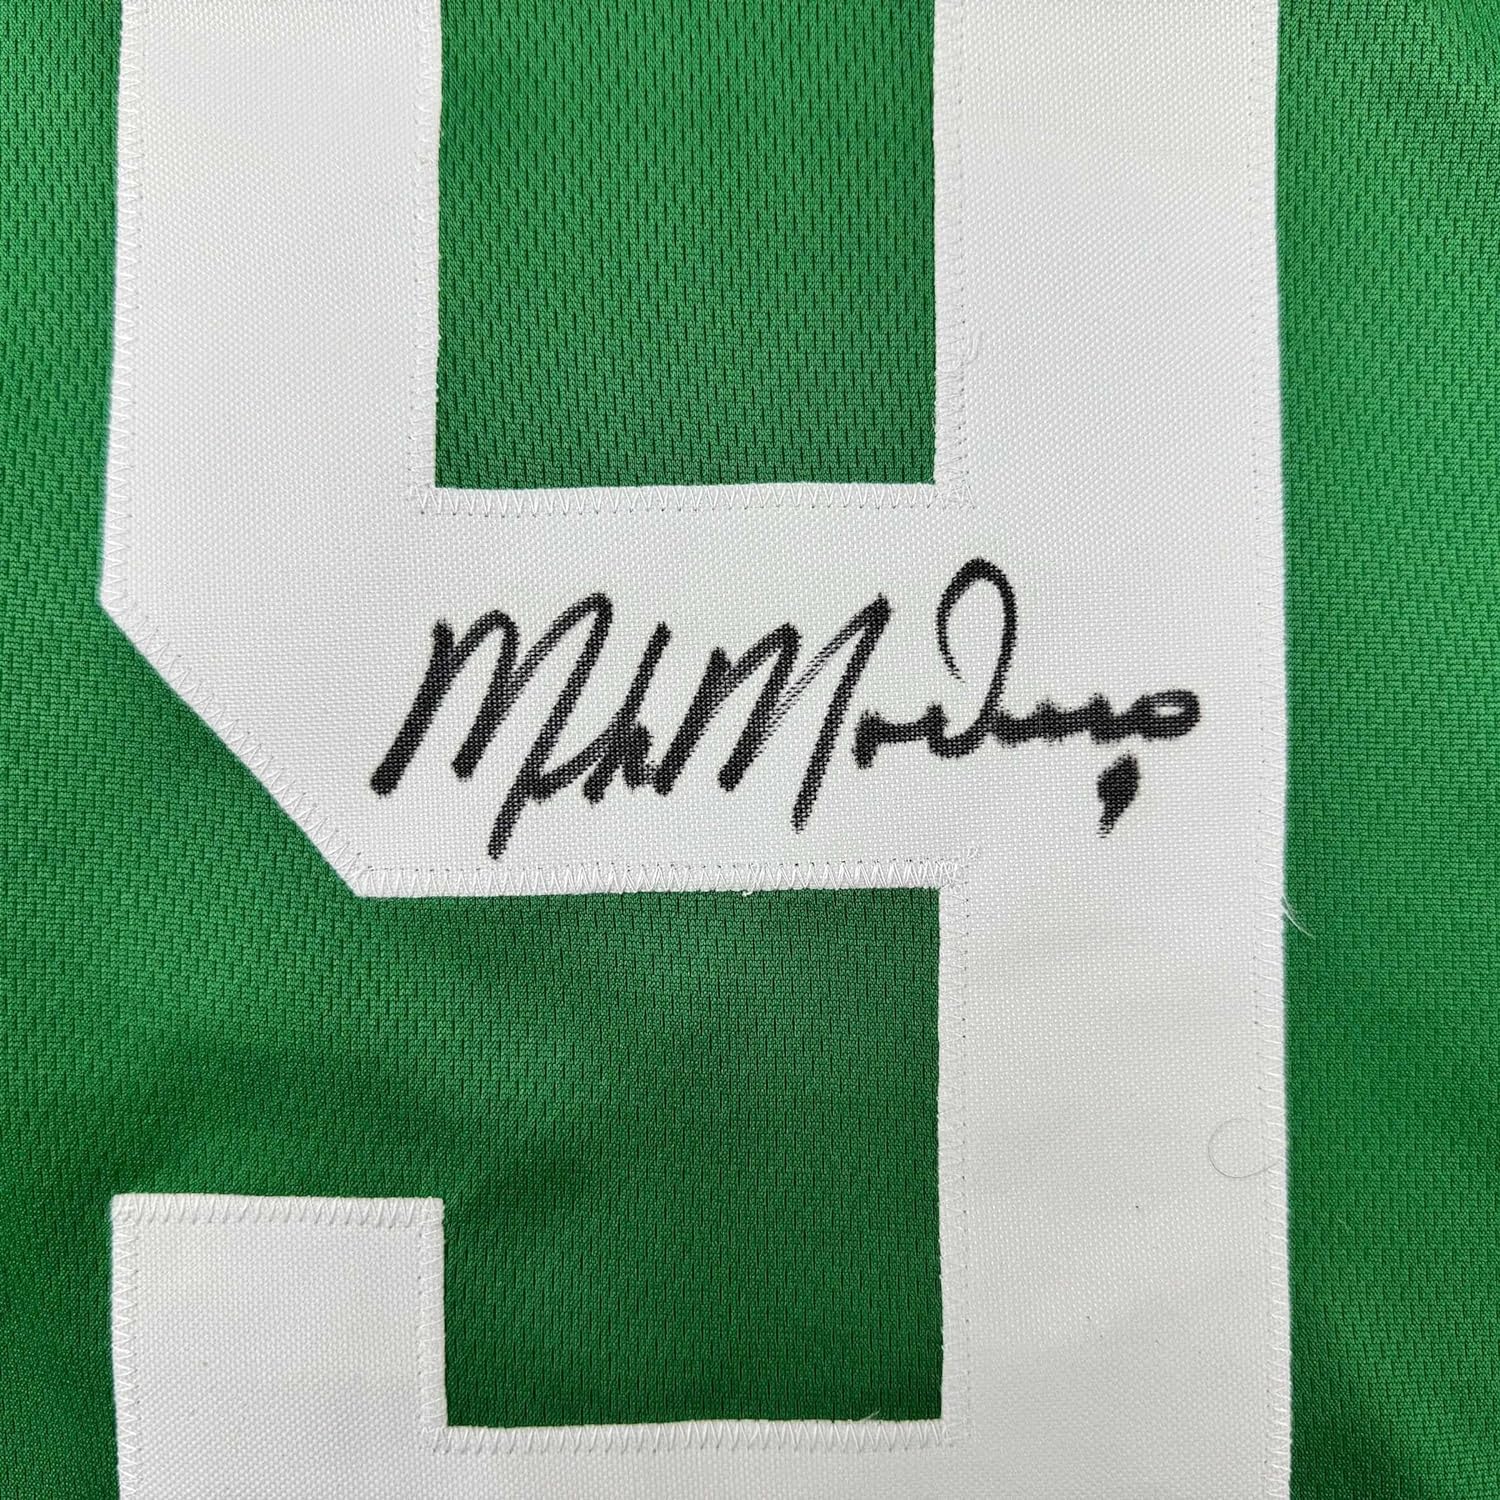 Framed Autographed/Signed Mike Modano 33x42 Dallas Green Retro Hockey Jersey Beckett BAS COA